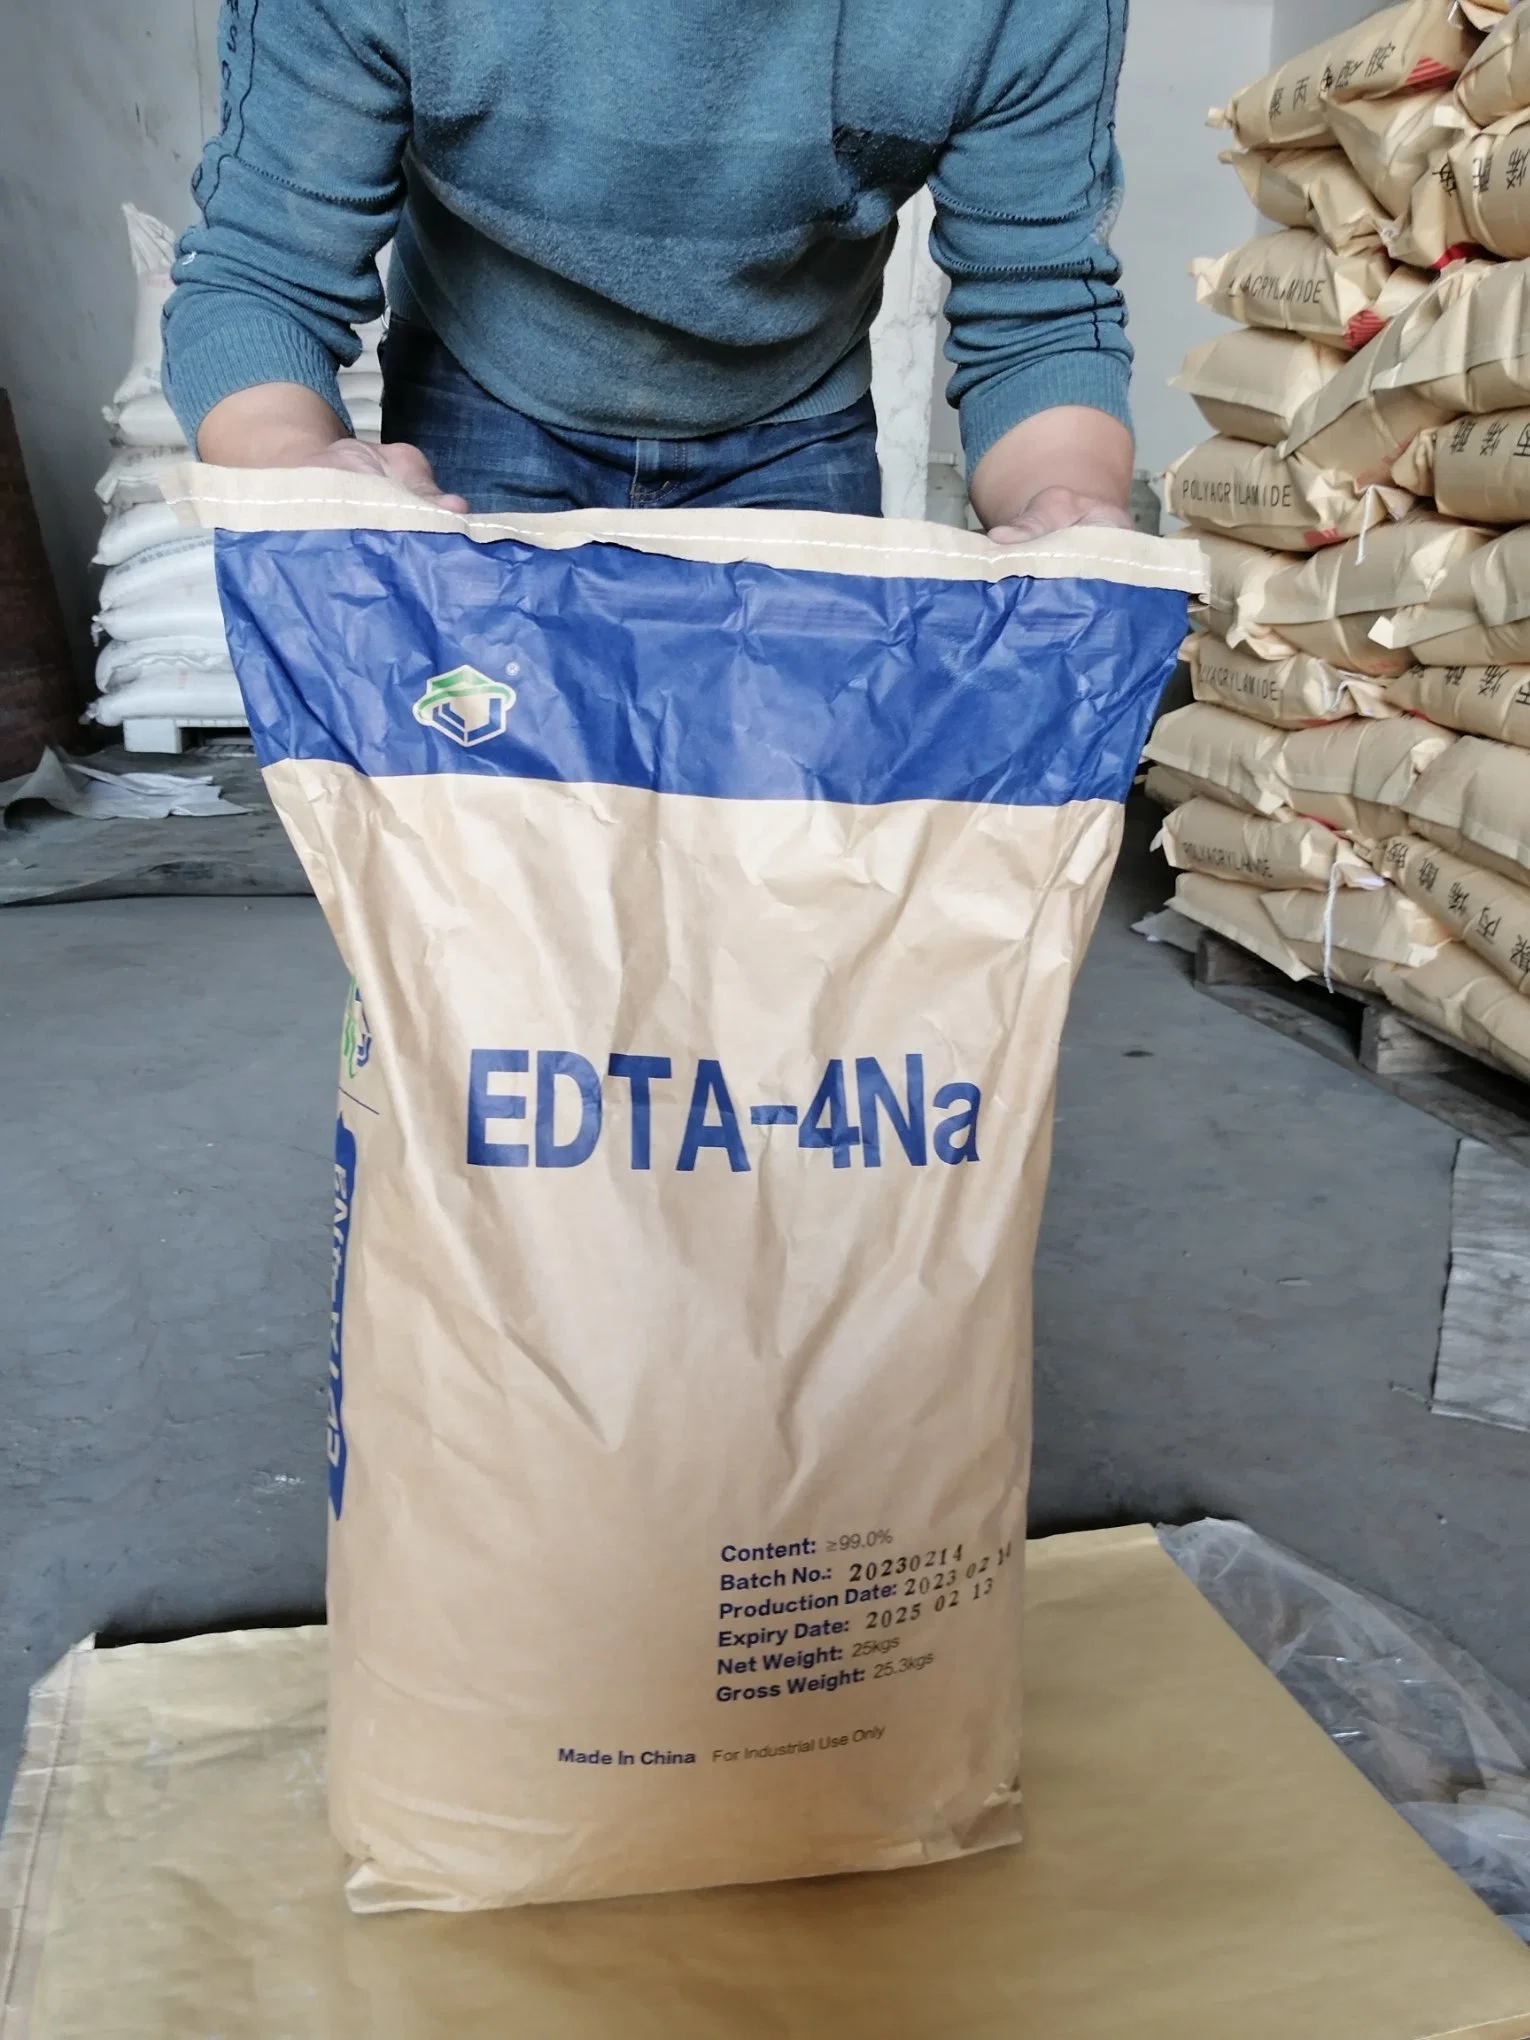 Édétate de sodium de haute qualité avec EDTA-acide EDTA-4na de pureté 99% cas 64-02-8